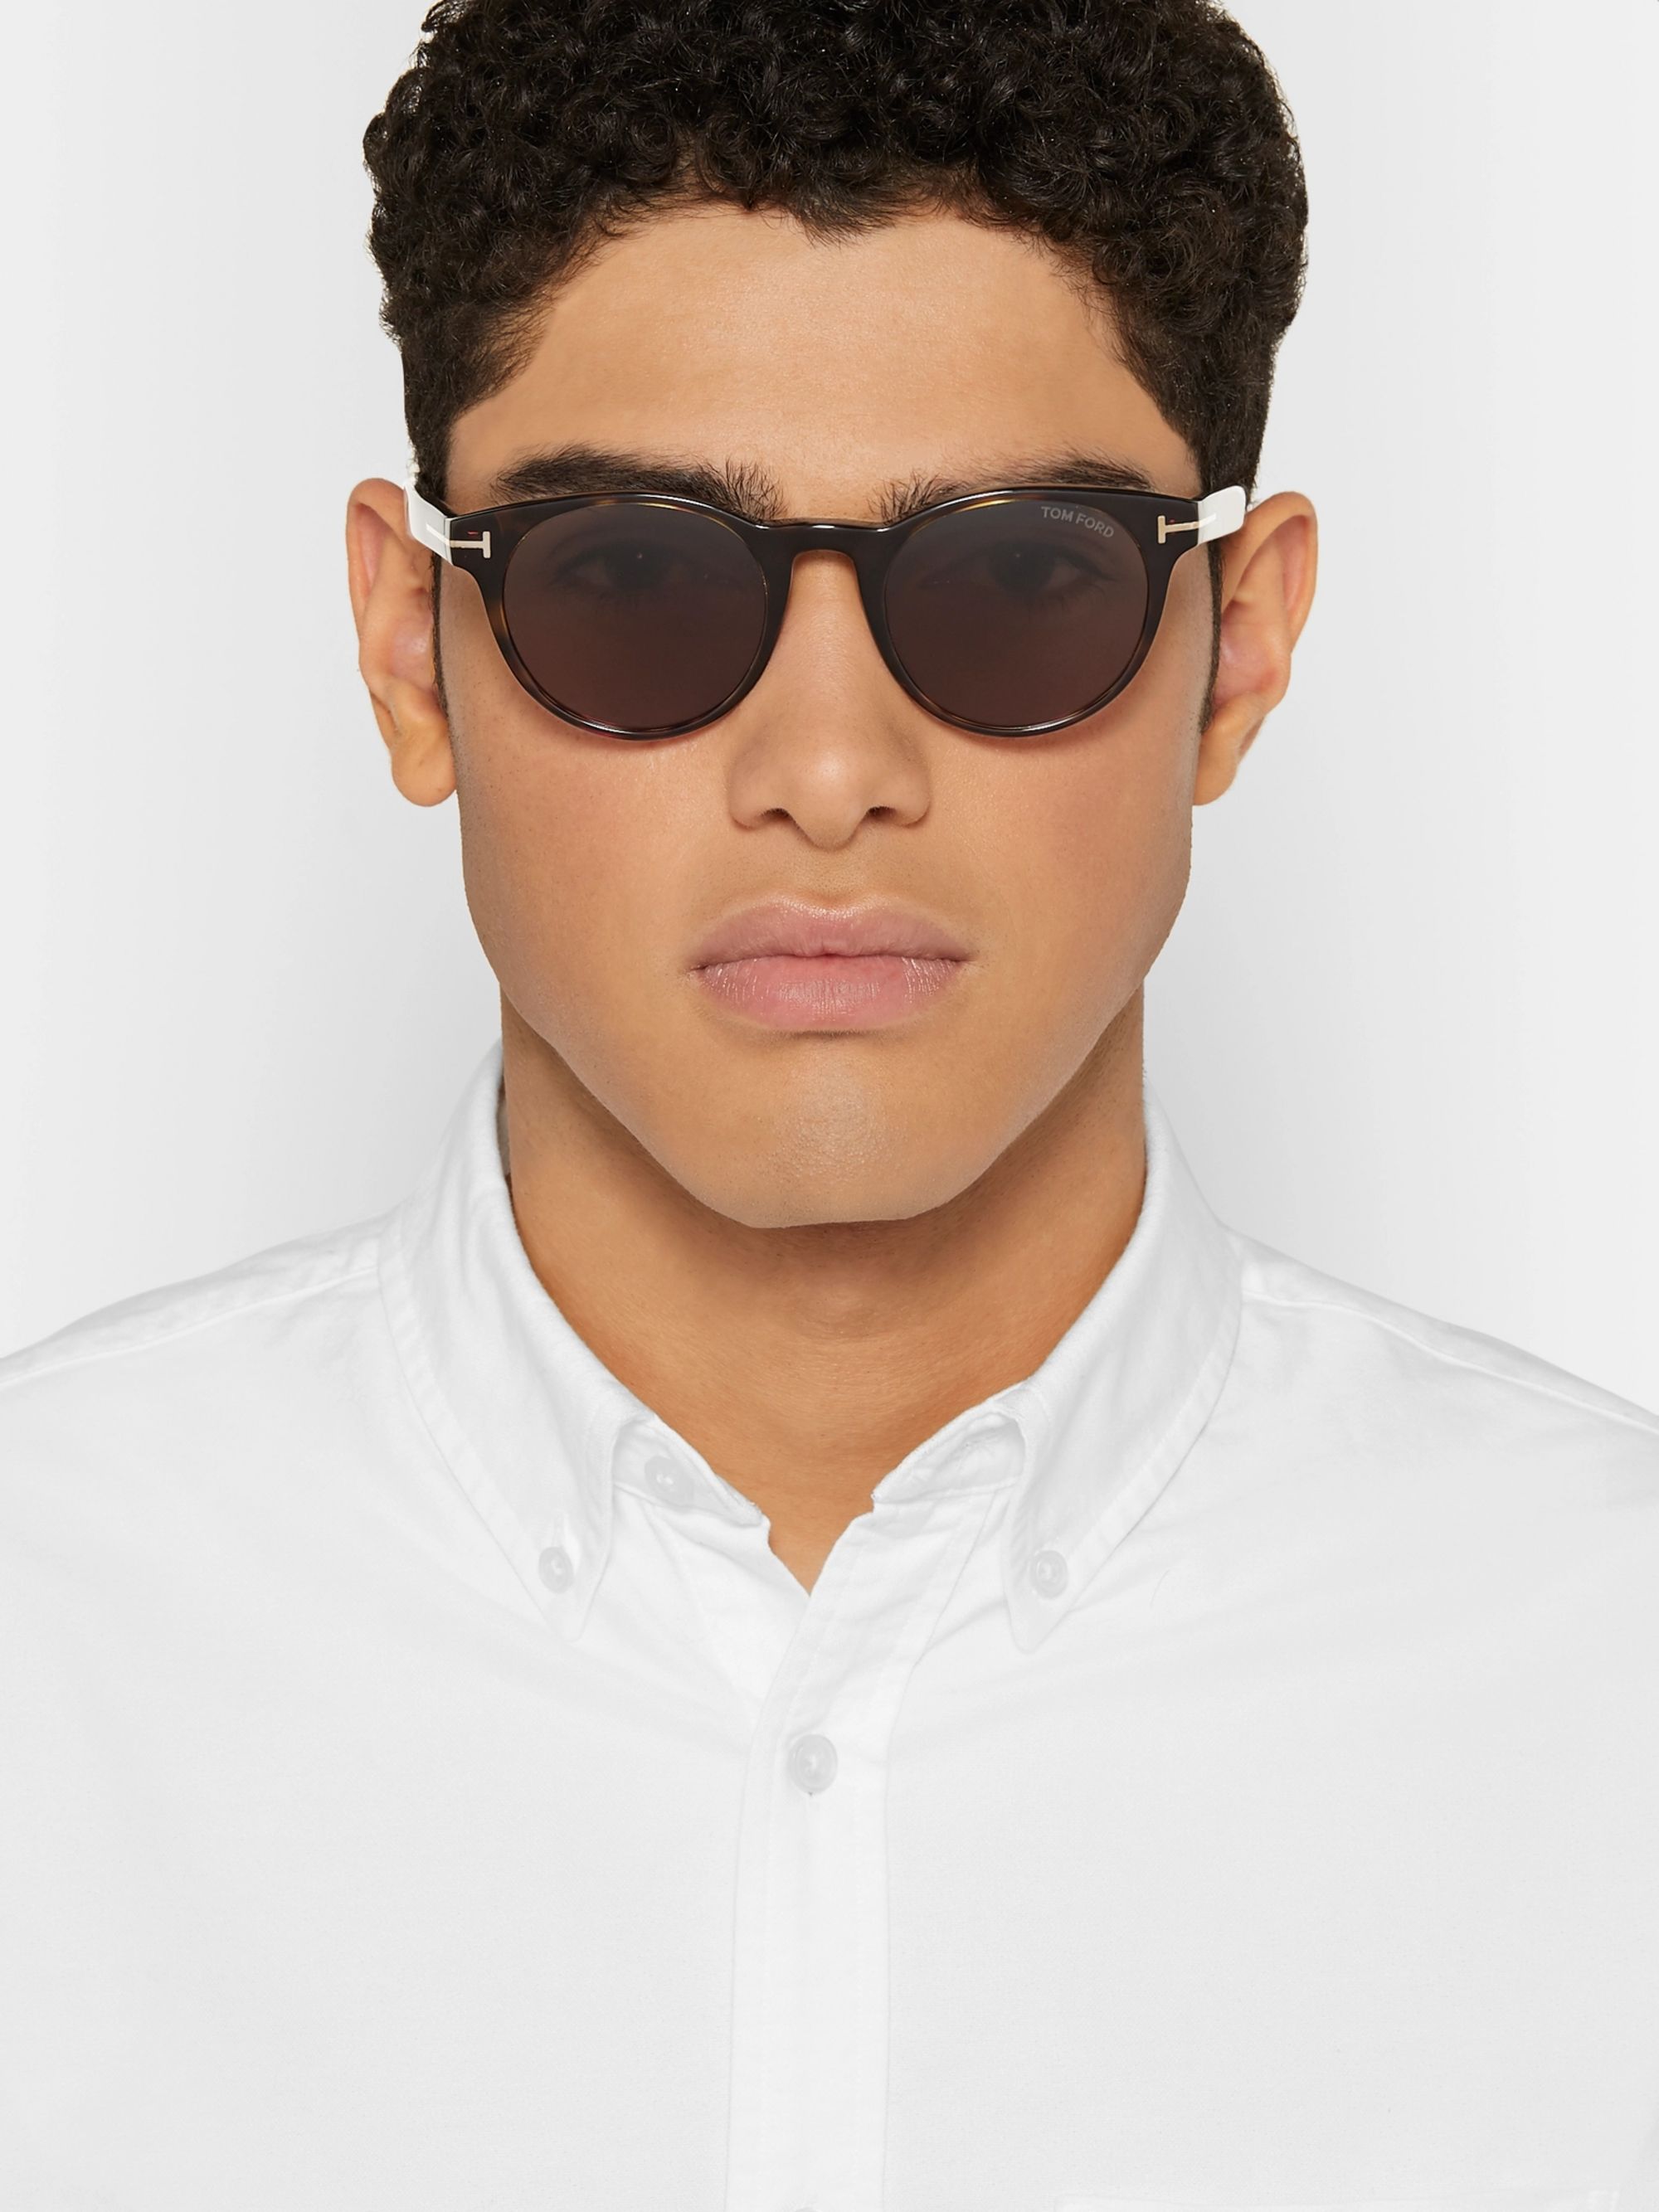 Очки солнцезащитные мужские на широкое лицо. Tom Ford men Sunglasses Polarized. Tom Ford Marco очки. Очки для круглолицых мужчин. Очки для круглого лица мужские солнцезащитные.